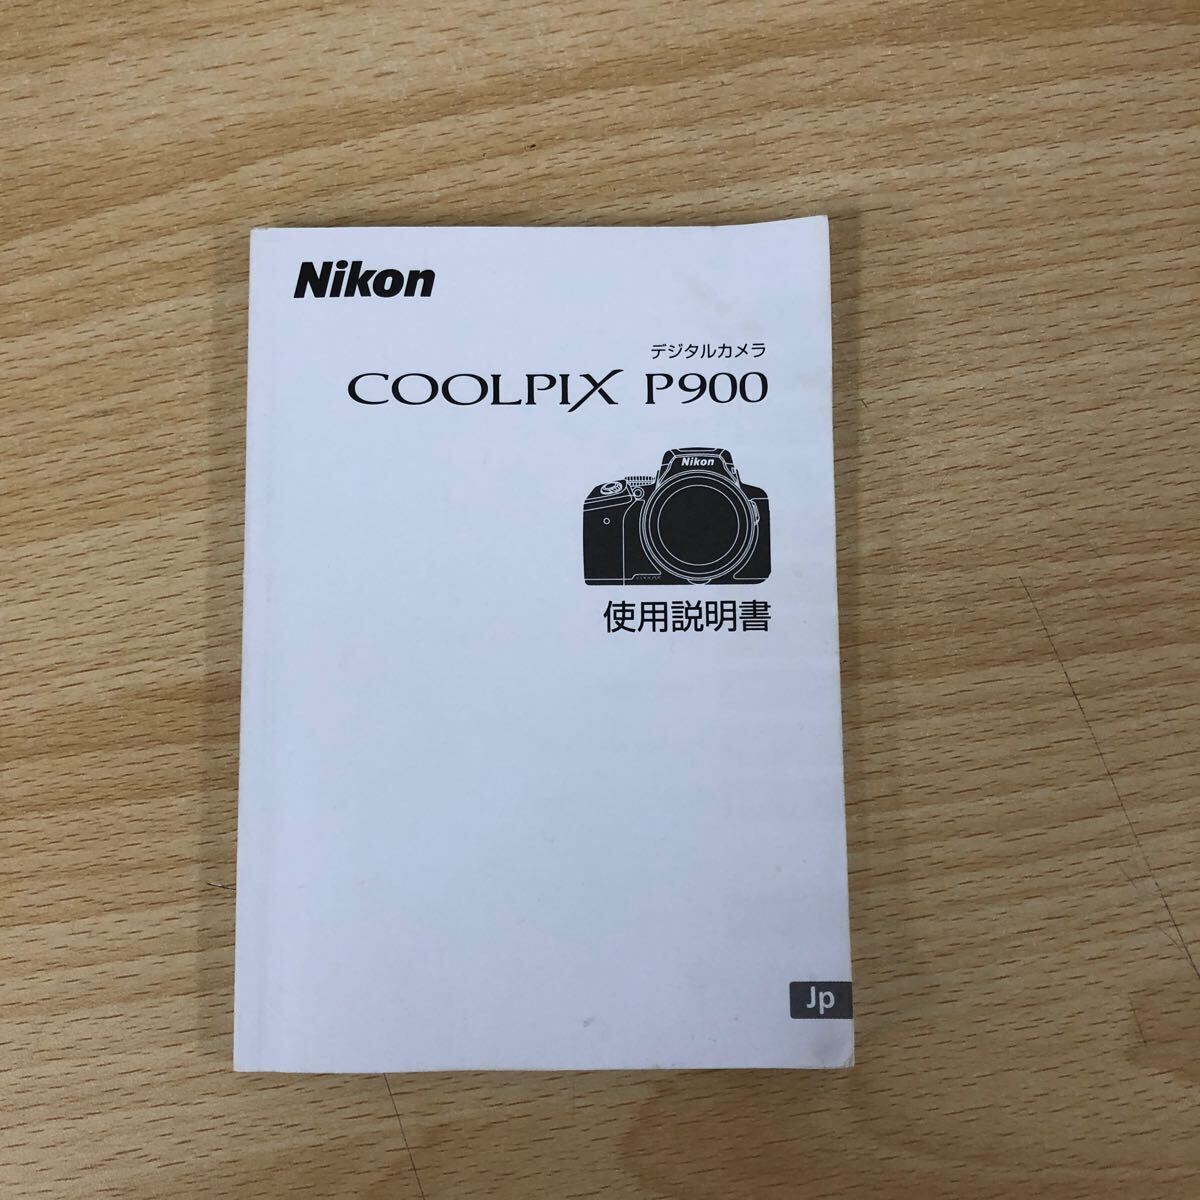 中古品 ニコン Nikon COOLPIX P900 コンパクトデジタルカメラ ブラック クールピクス ボディ・カメラ関連の画像10